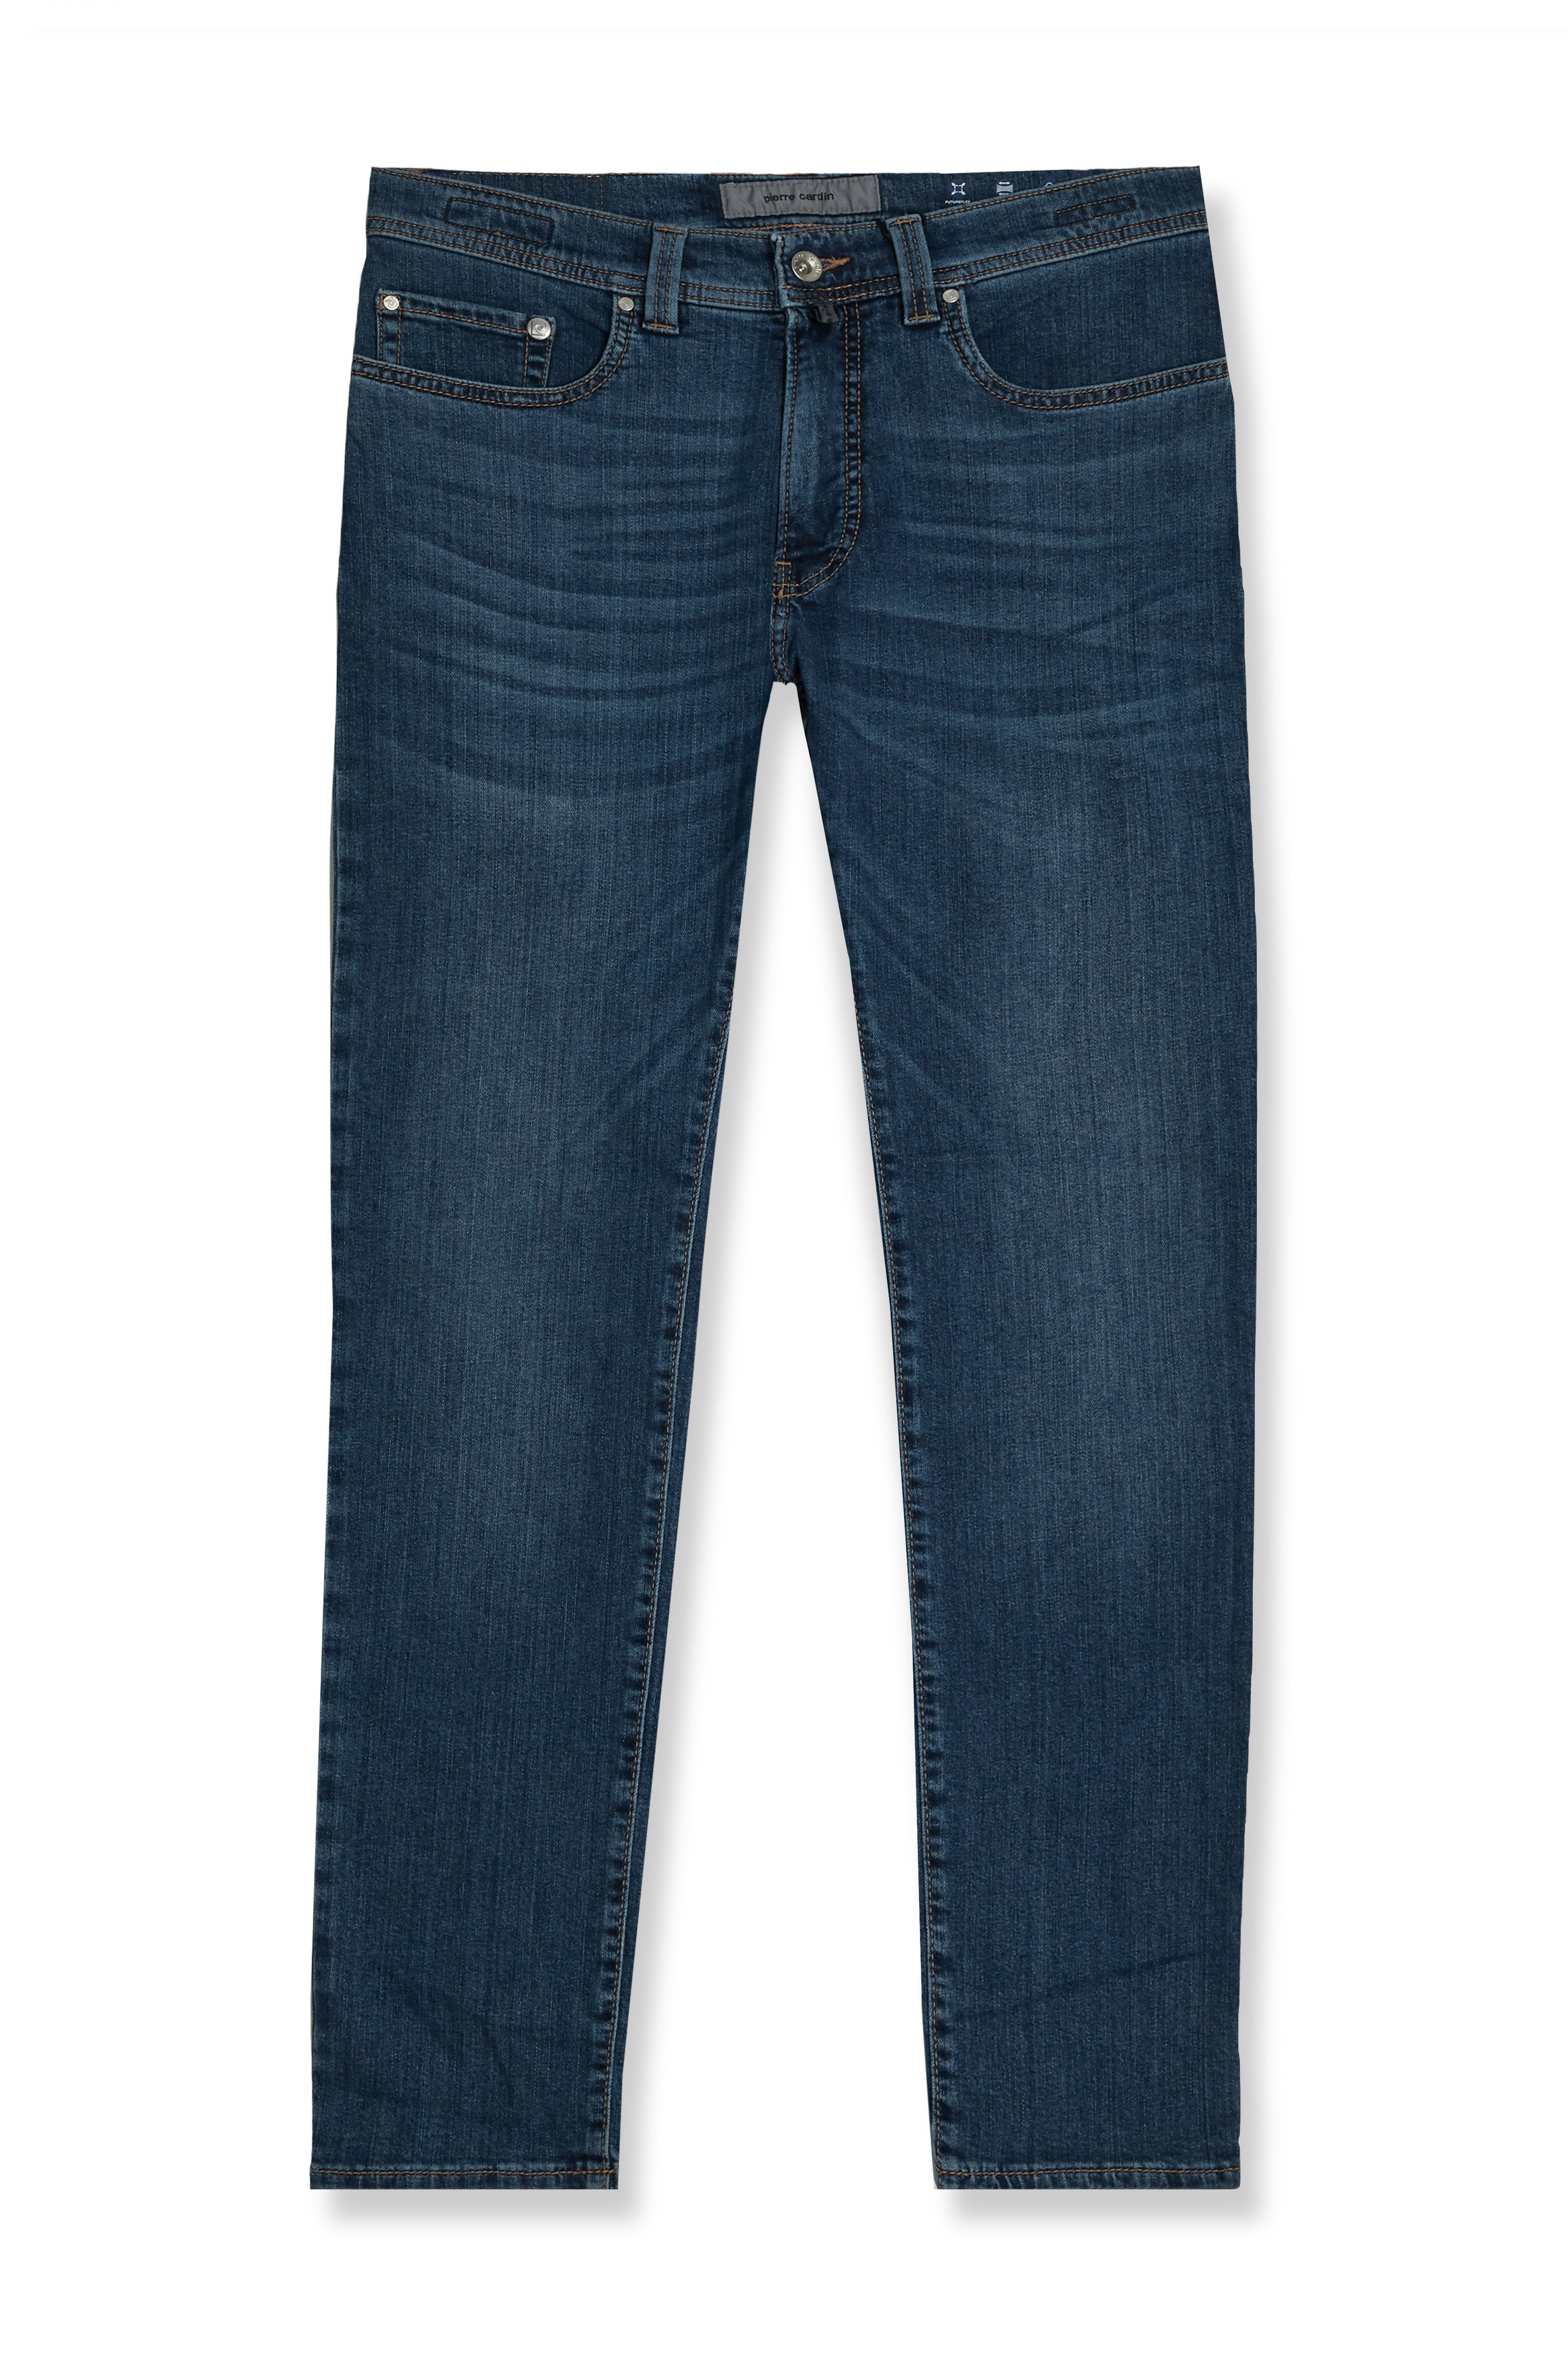 Pierre Cardin 5-Pocket-Jeans Pierre Cardin Herren Jeans Lyon Futureflex - blau (1-tlg)